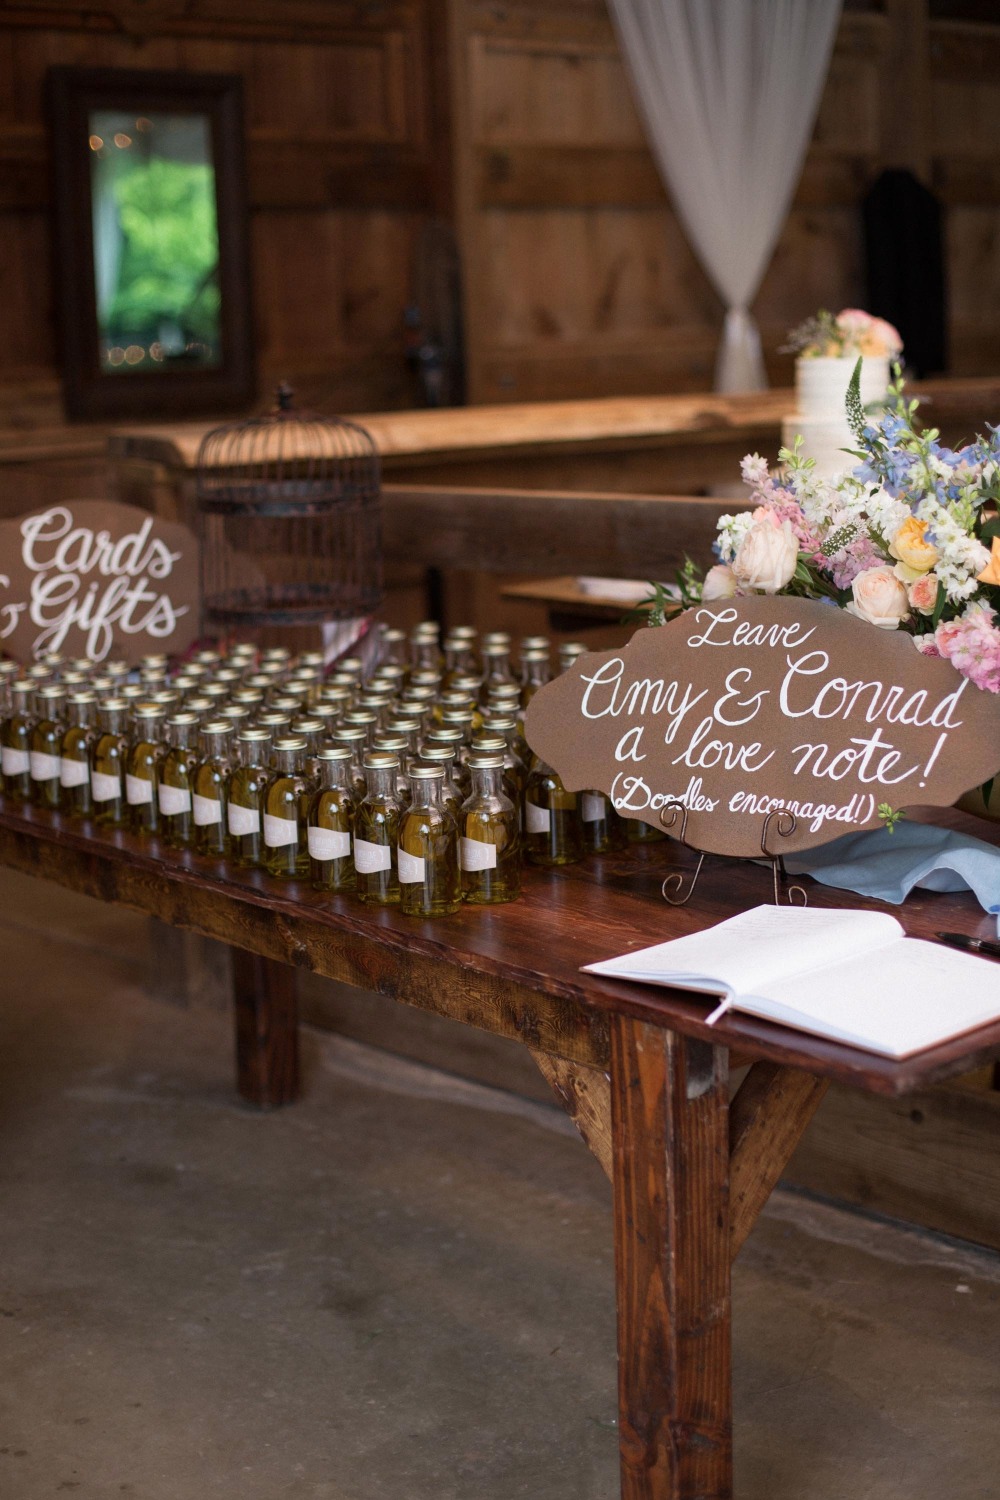 Bottles of olive oil wedding favors